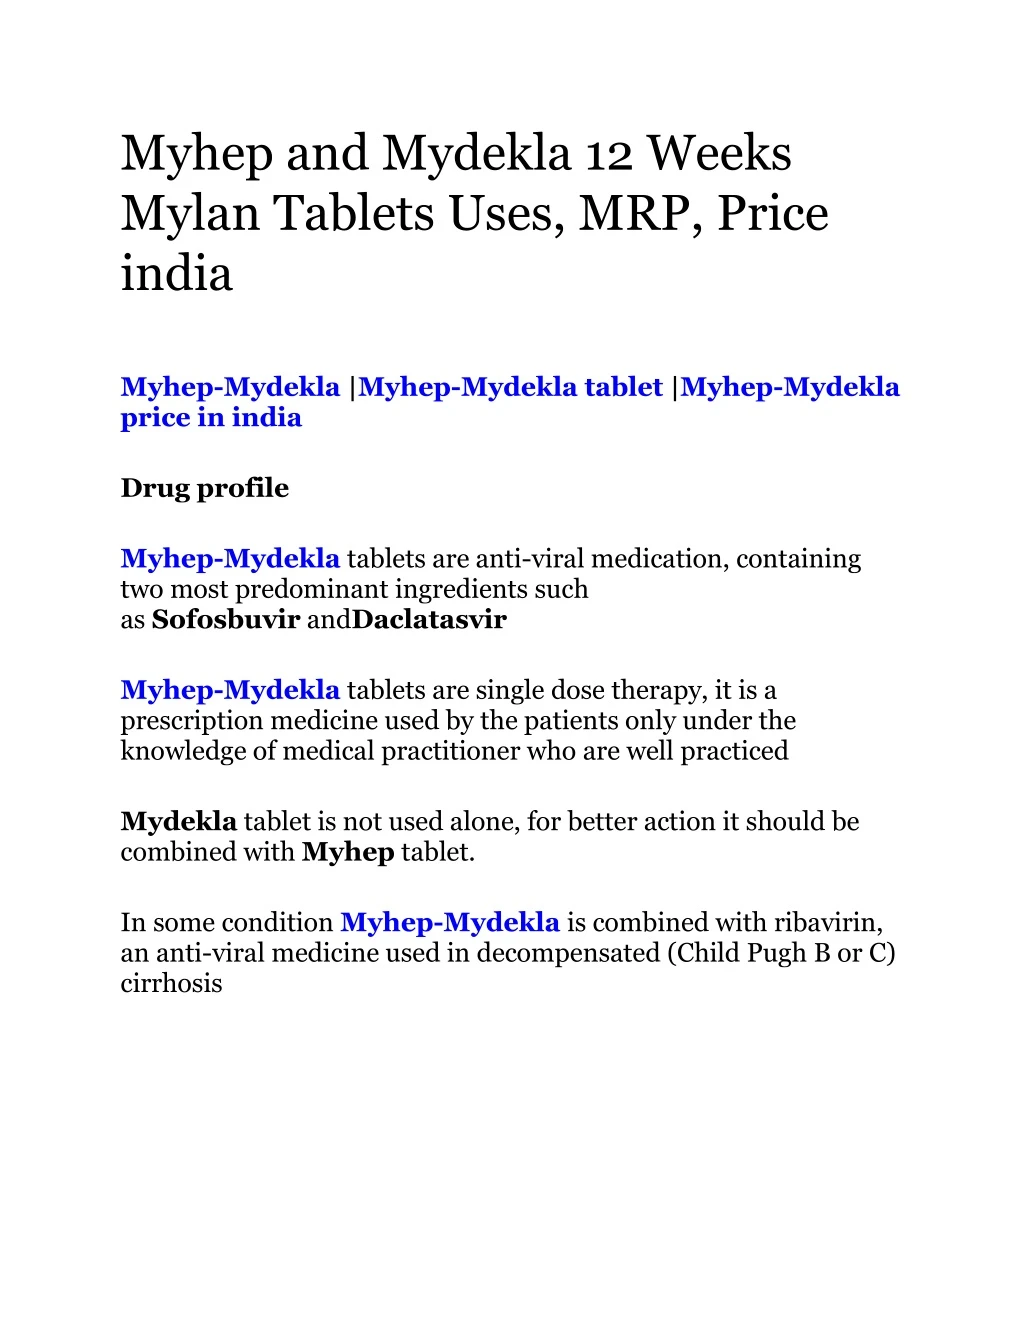 myhep and mydekla 12 weeks mylan tablets uses